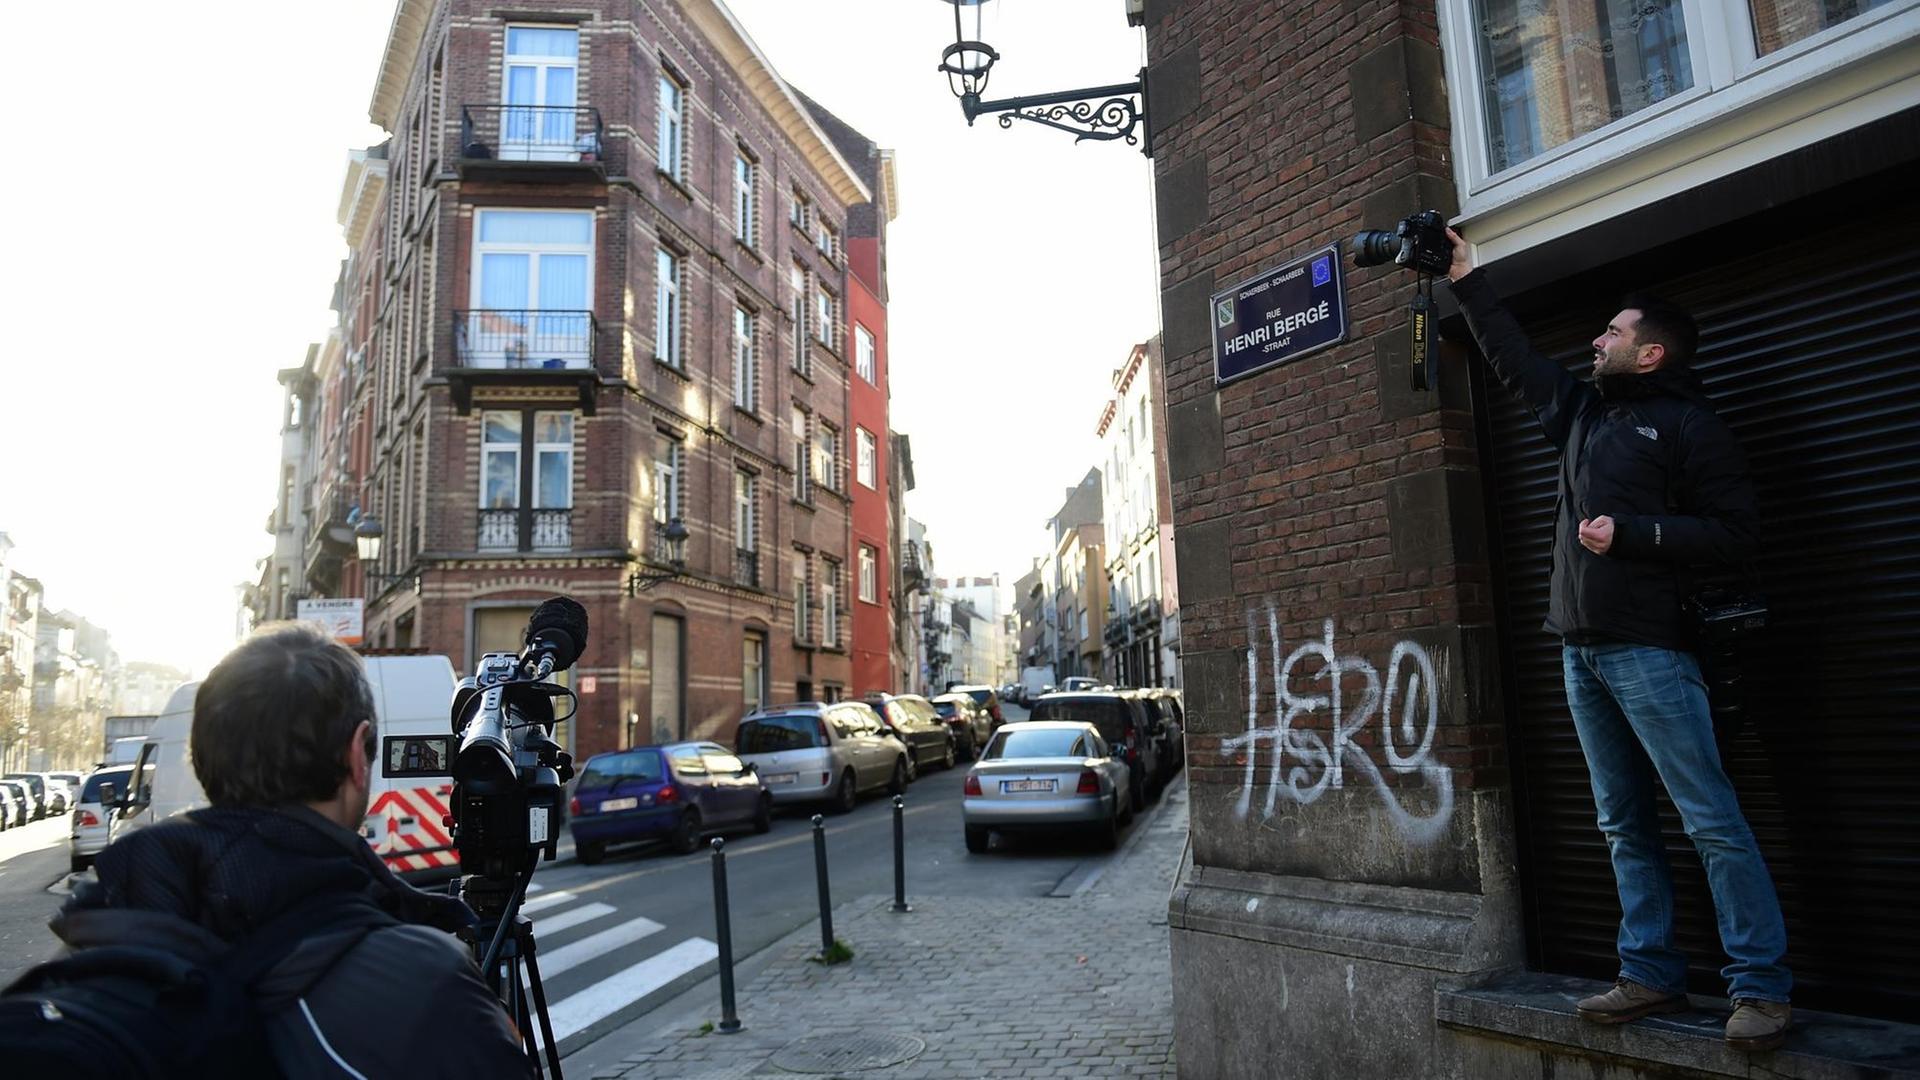 Journalisten nehmen Bilder in der Rue Henri Berge im Brüsseler Stadtteil Schaerbeek auf.